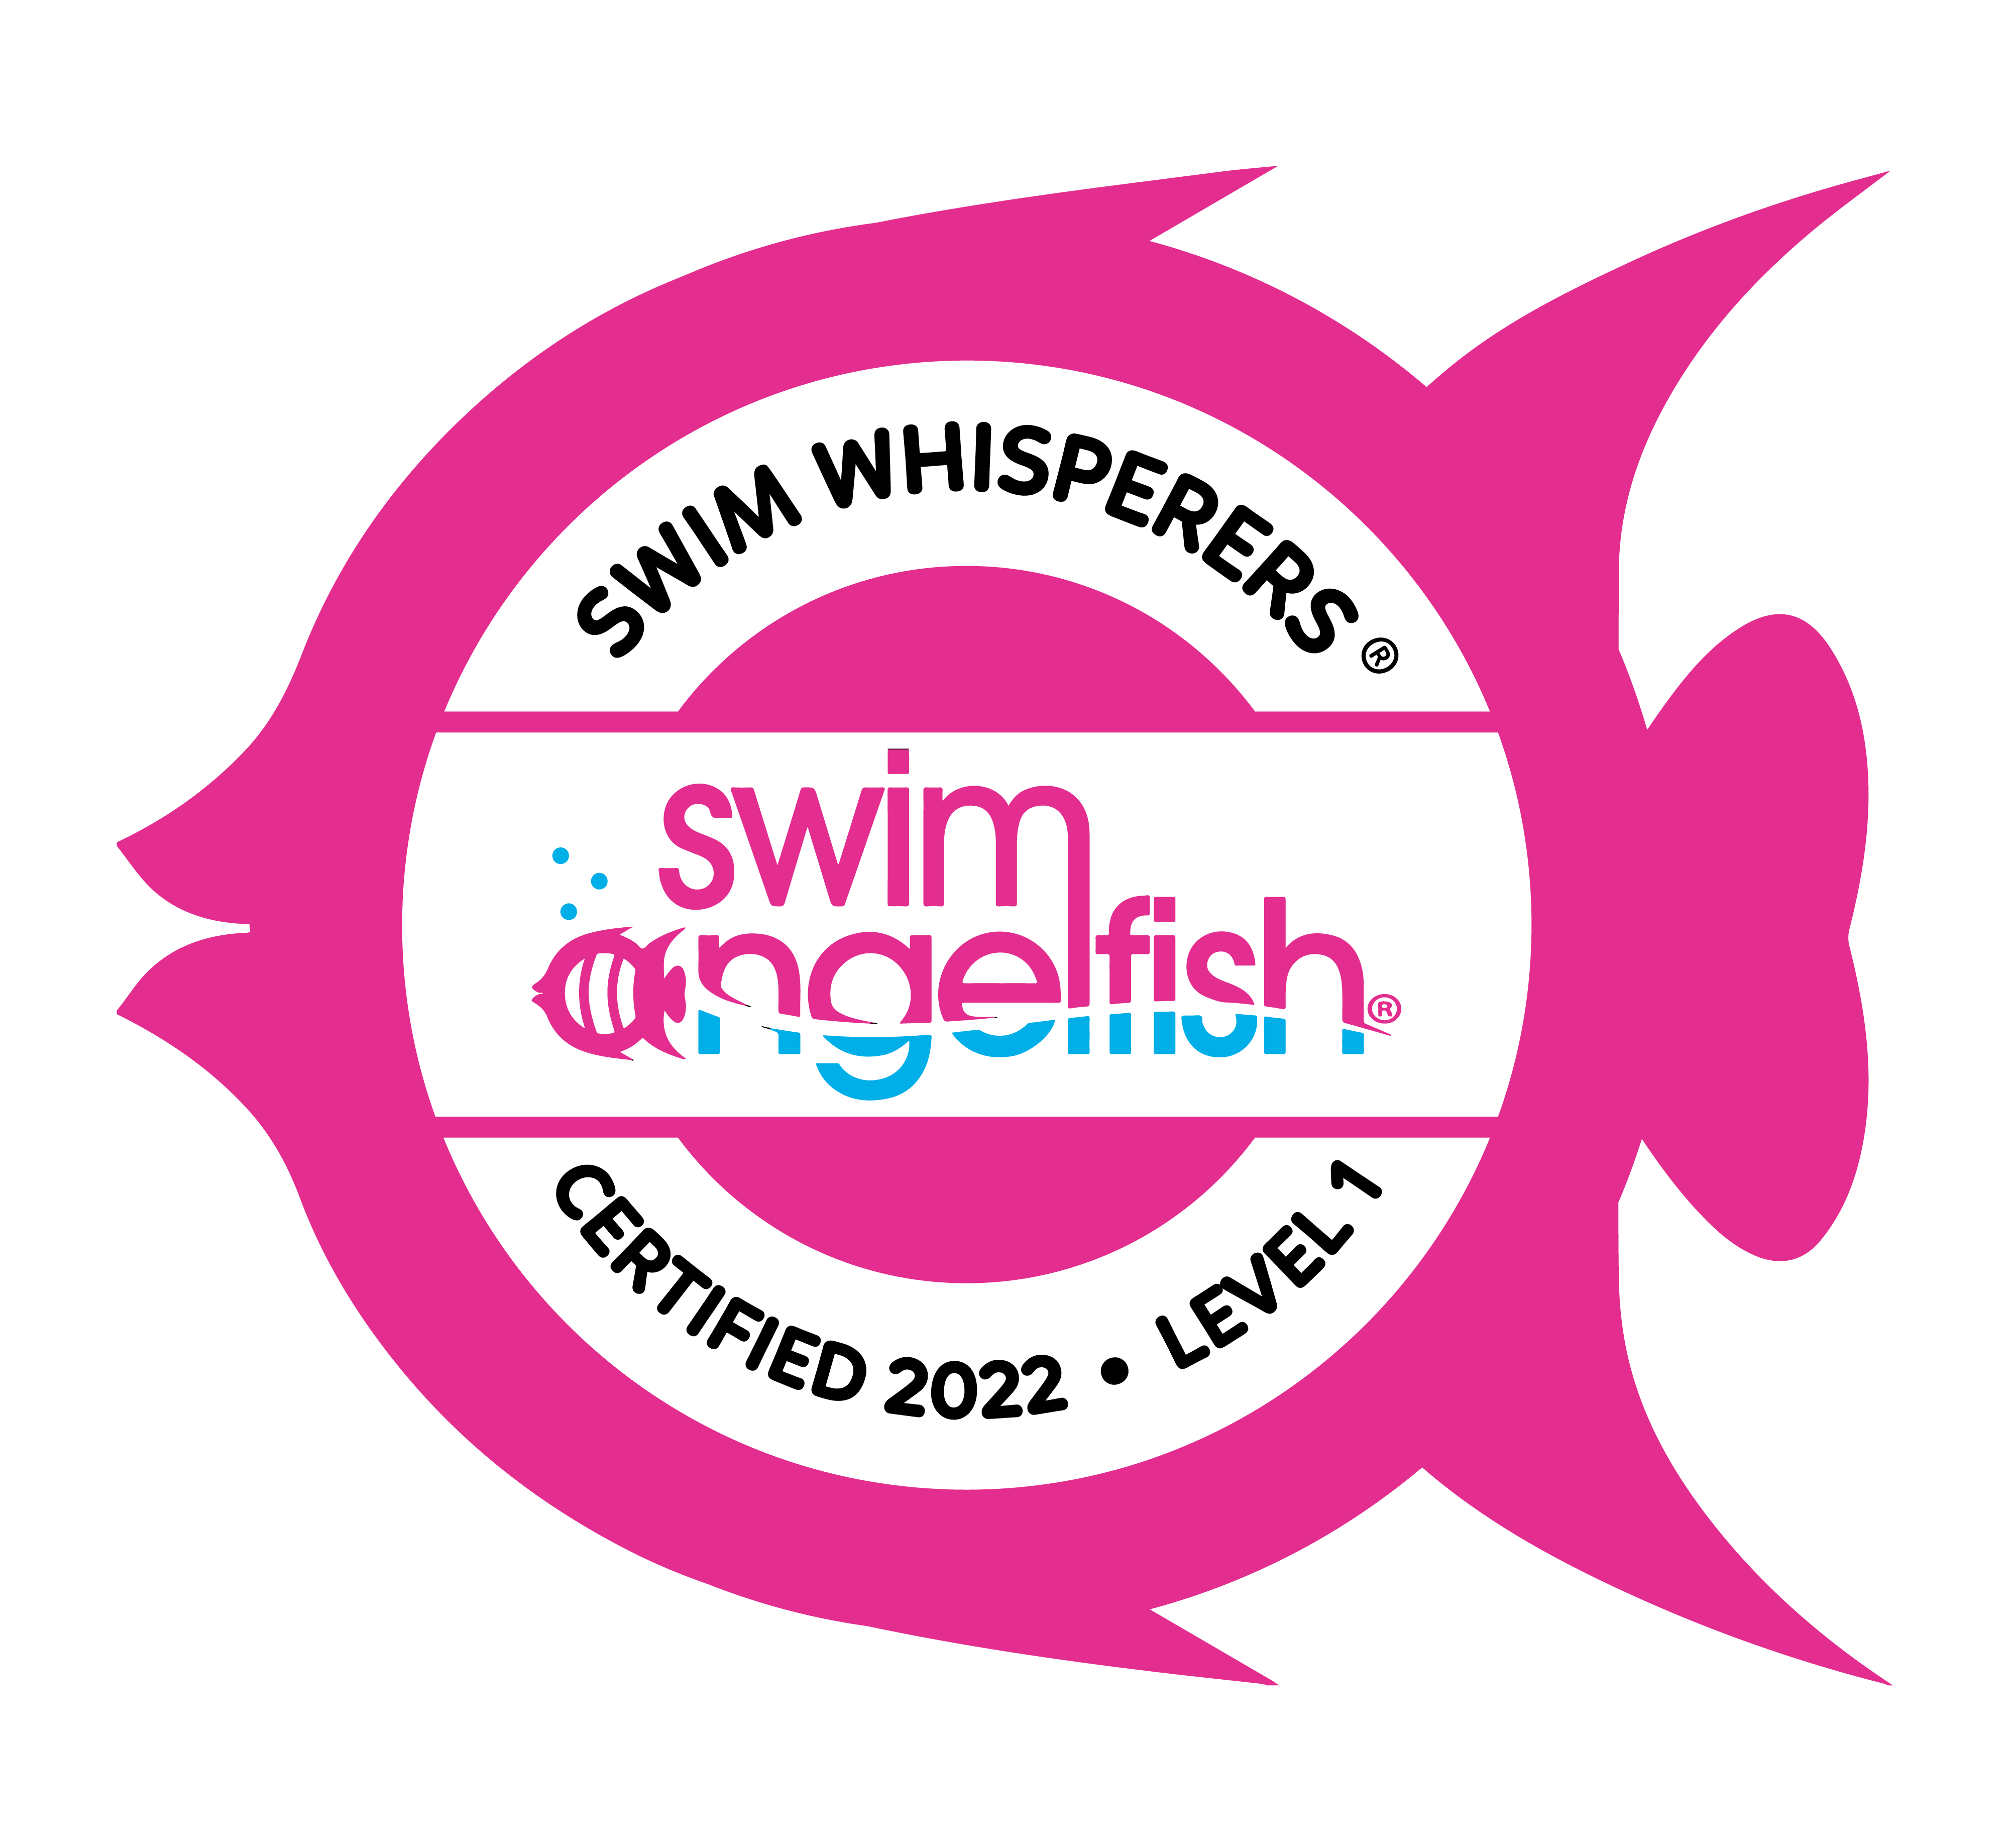 swim whisperers swim training